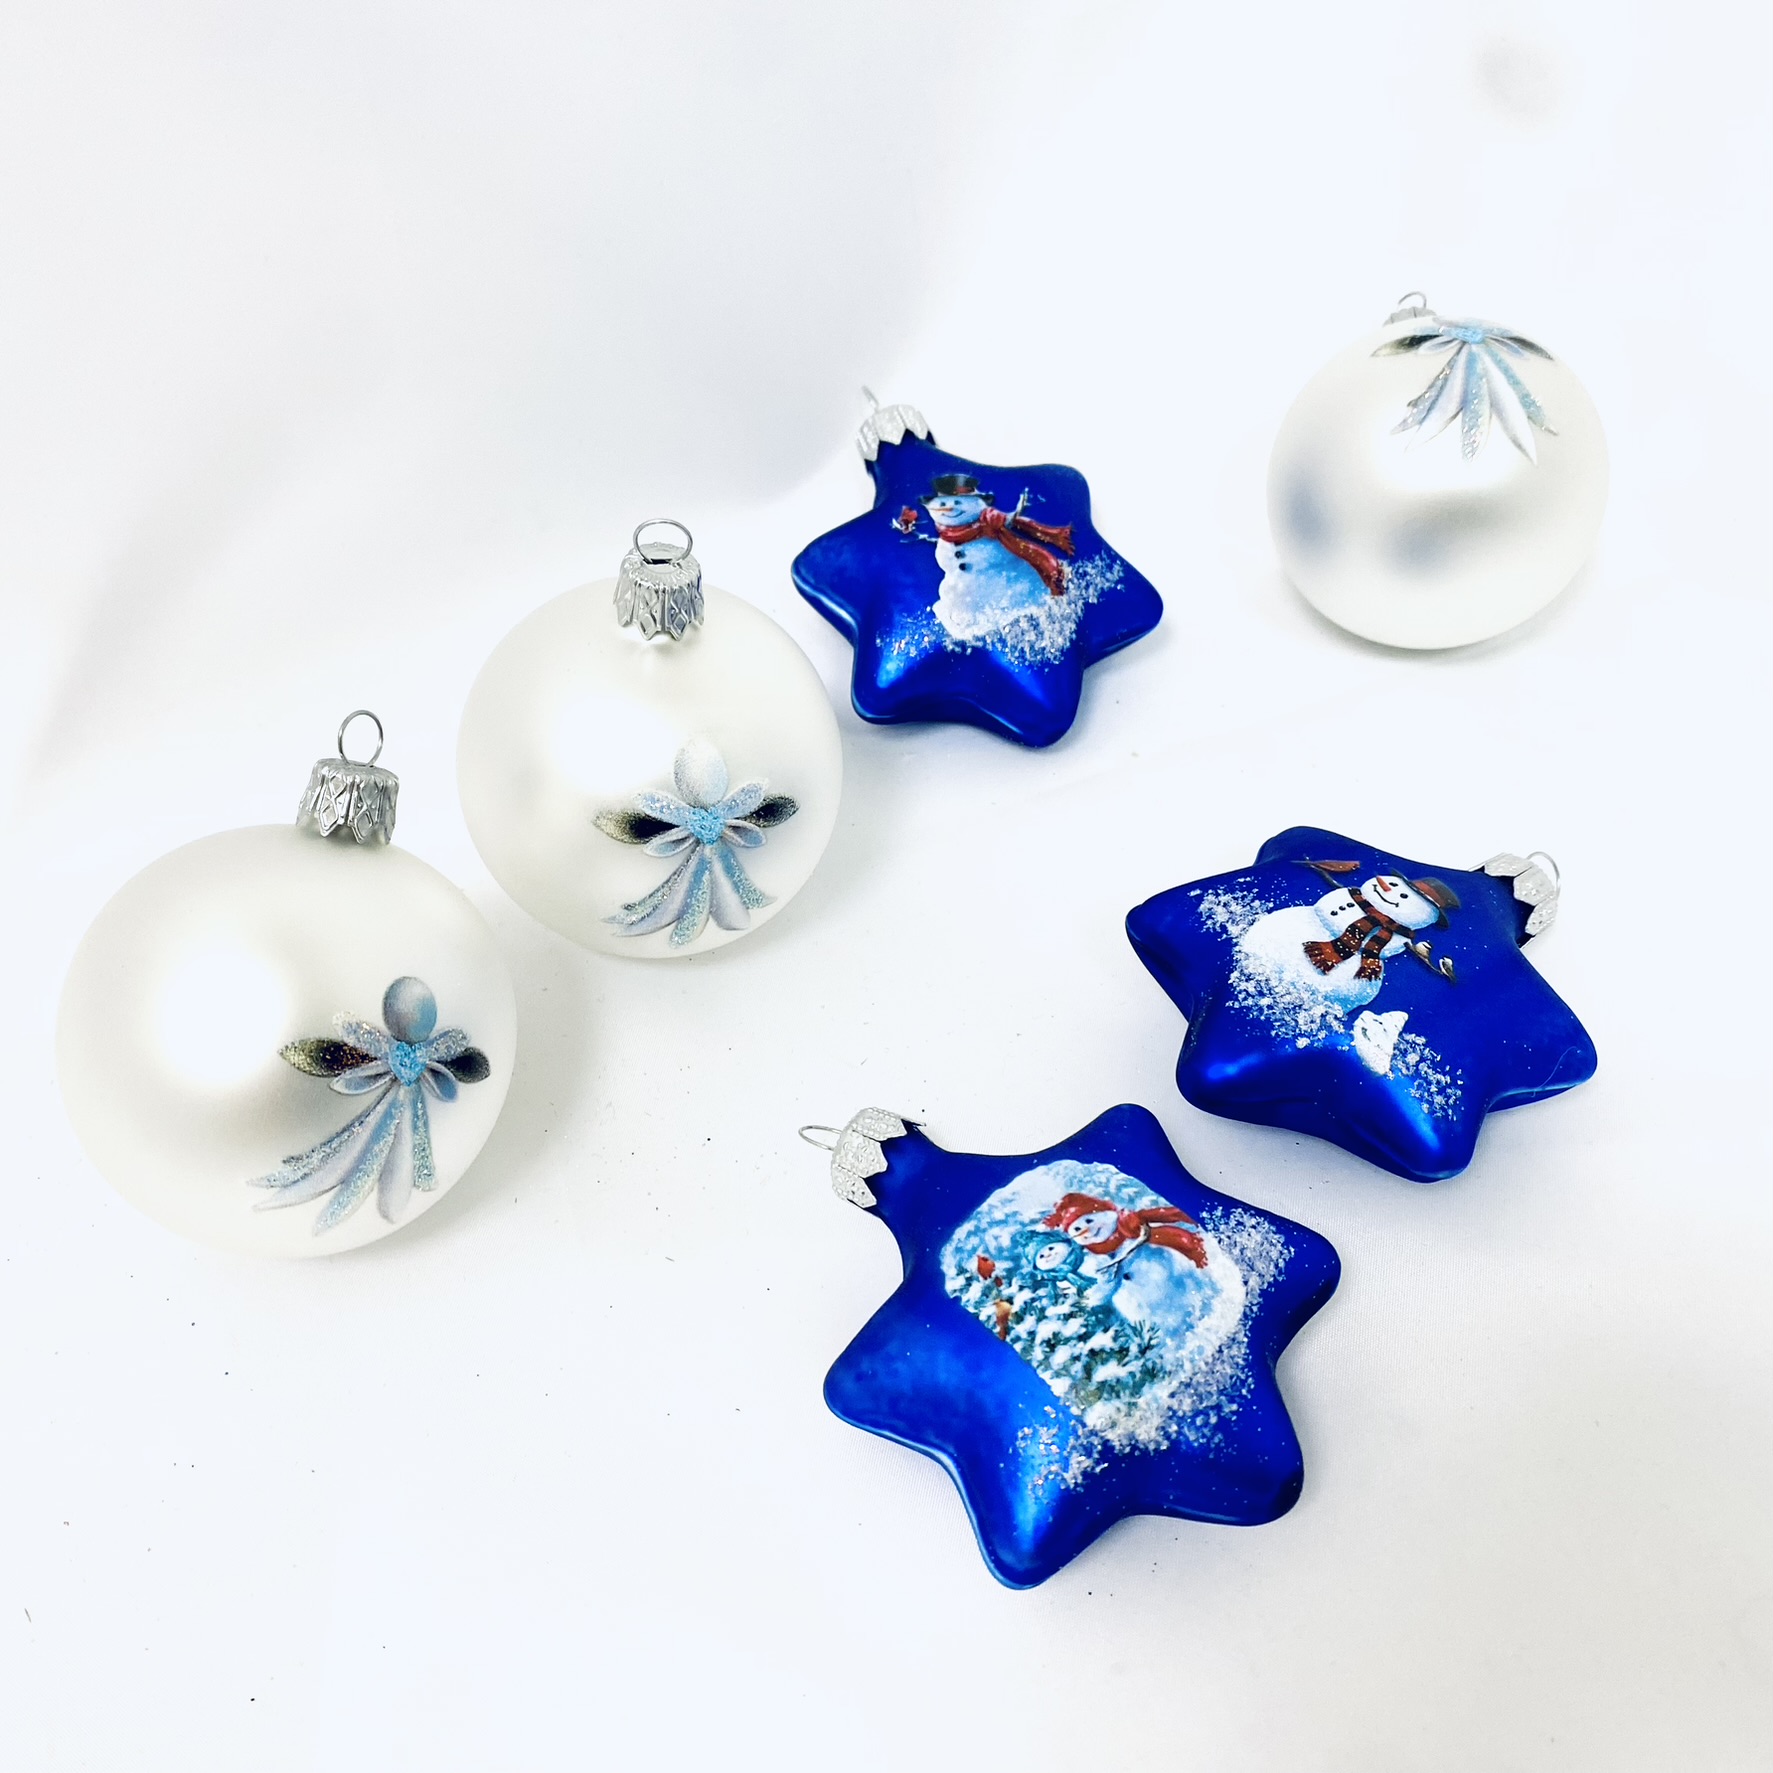 Sada vánočního nebe - 6 Kusů skleněných ozdob ( velikost 6 cm ) IRISA" Balení: 6 ks, Barva: bílá;modrá, Velikost: 6 cm